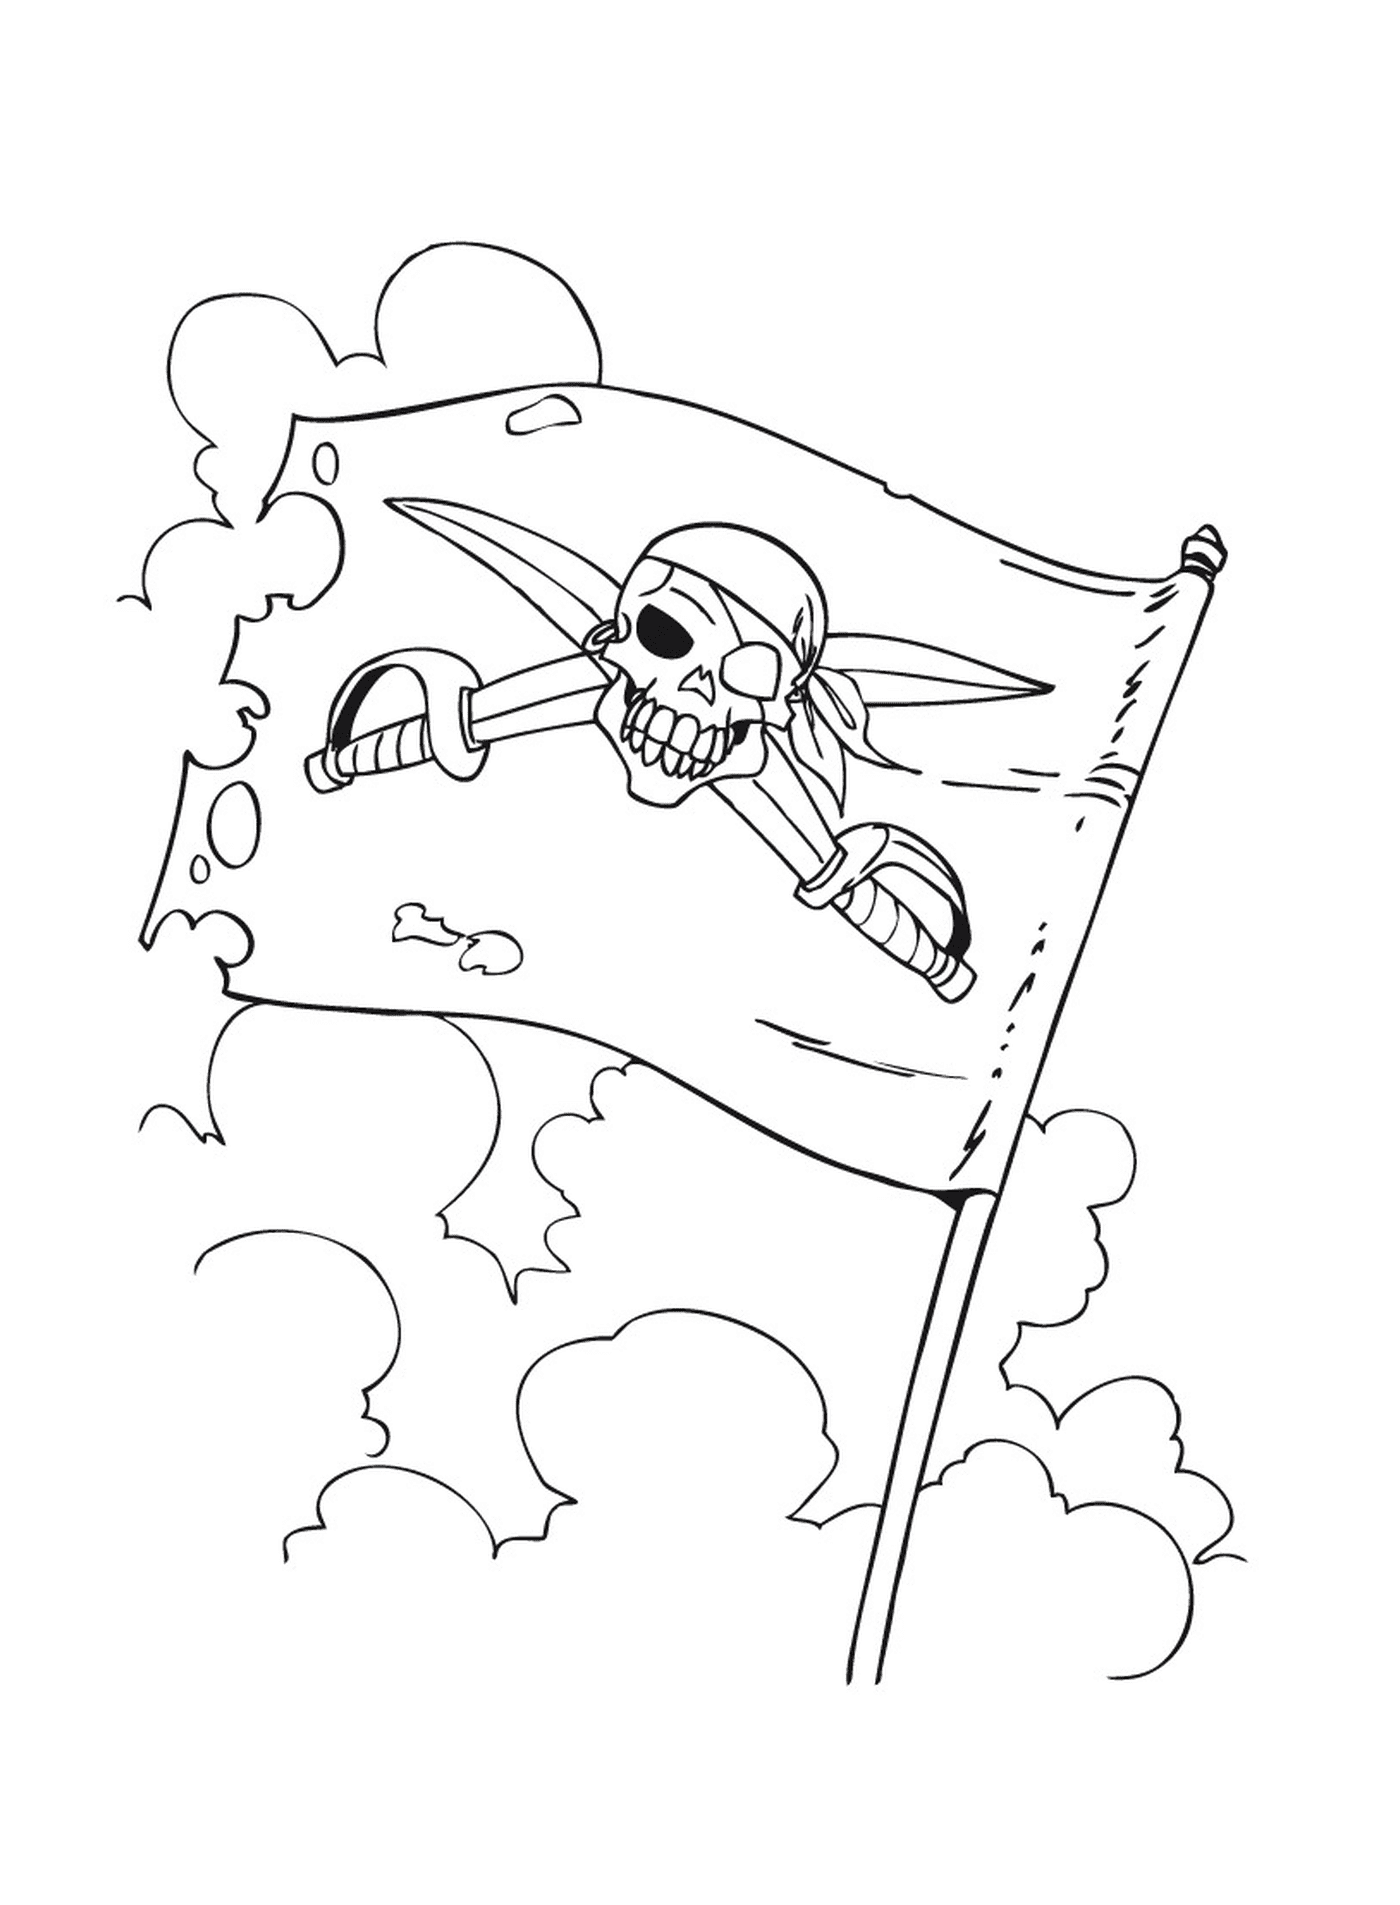 drapeau pirate